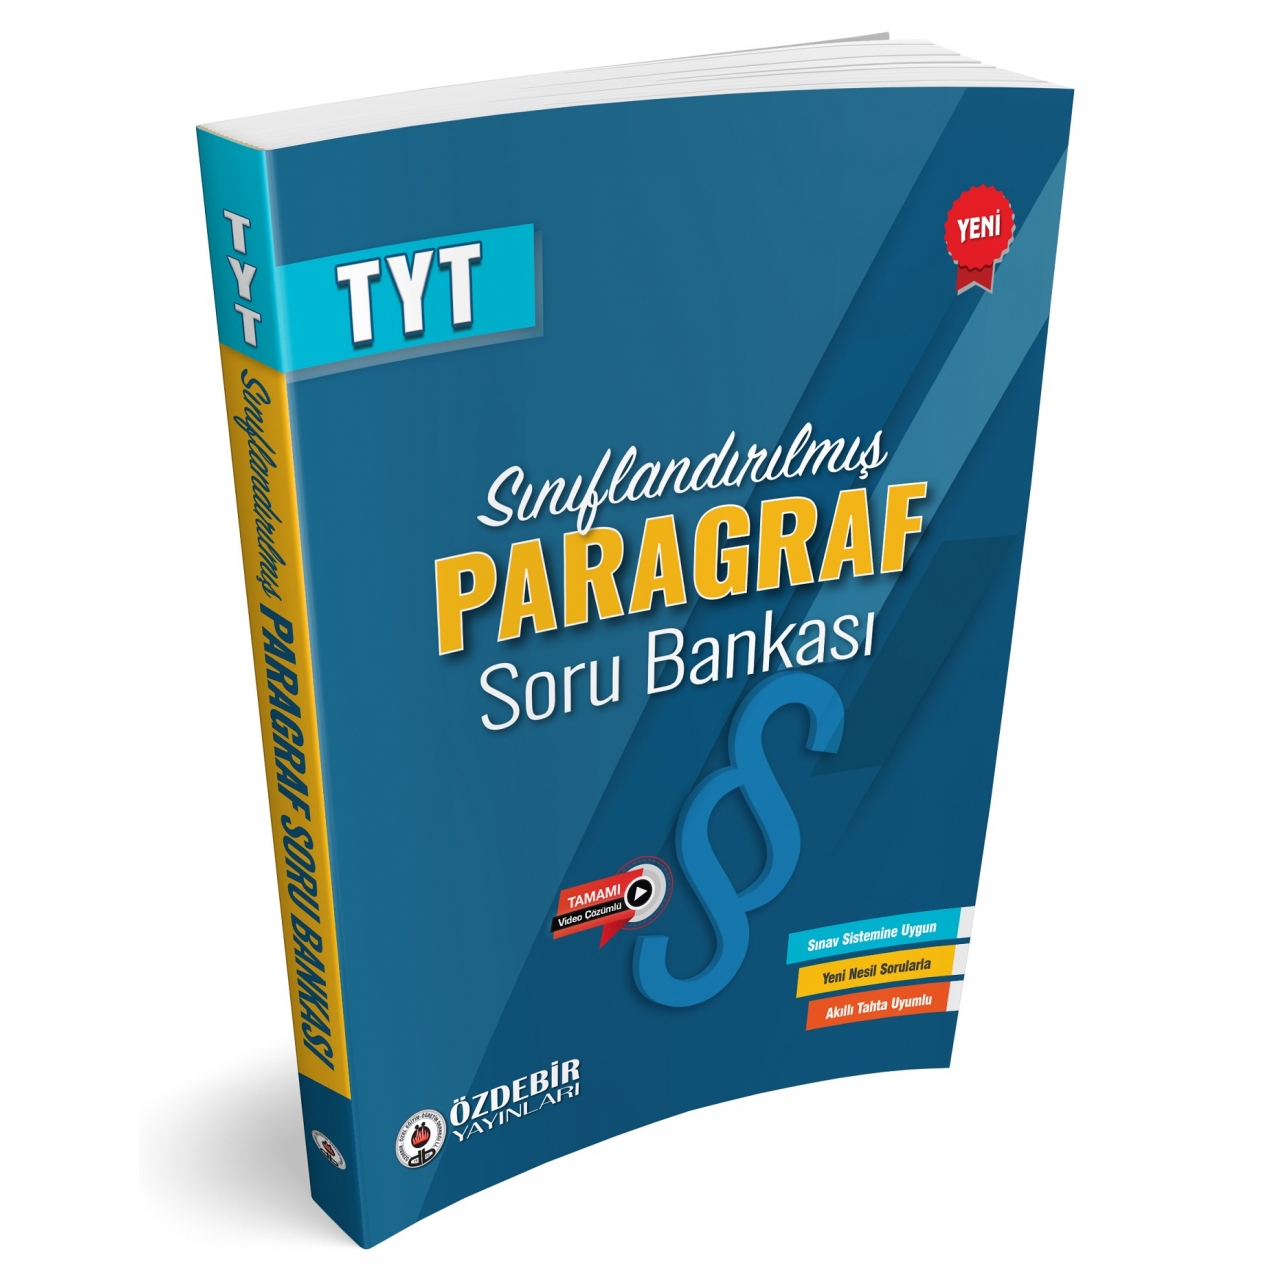 TYT Sınıflandırılmış Paragraf Soru Bankası Özdebir Yayınları